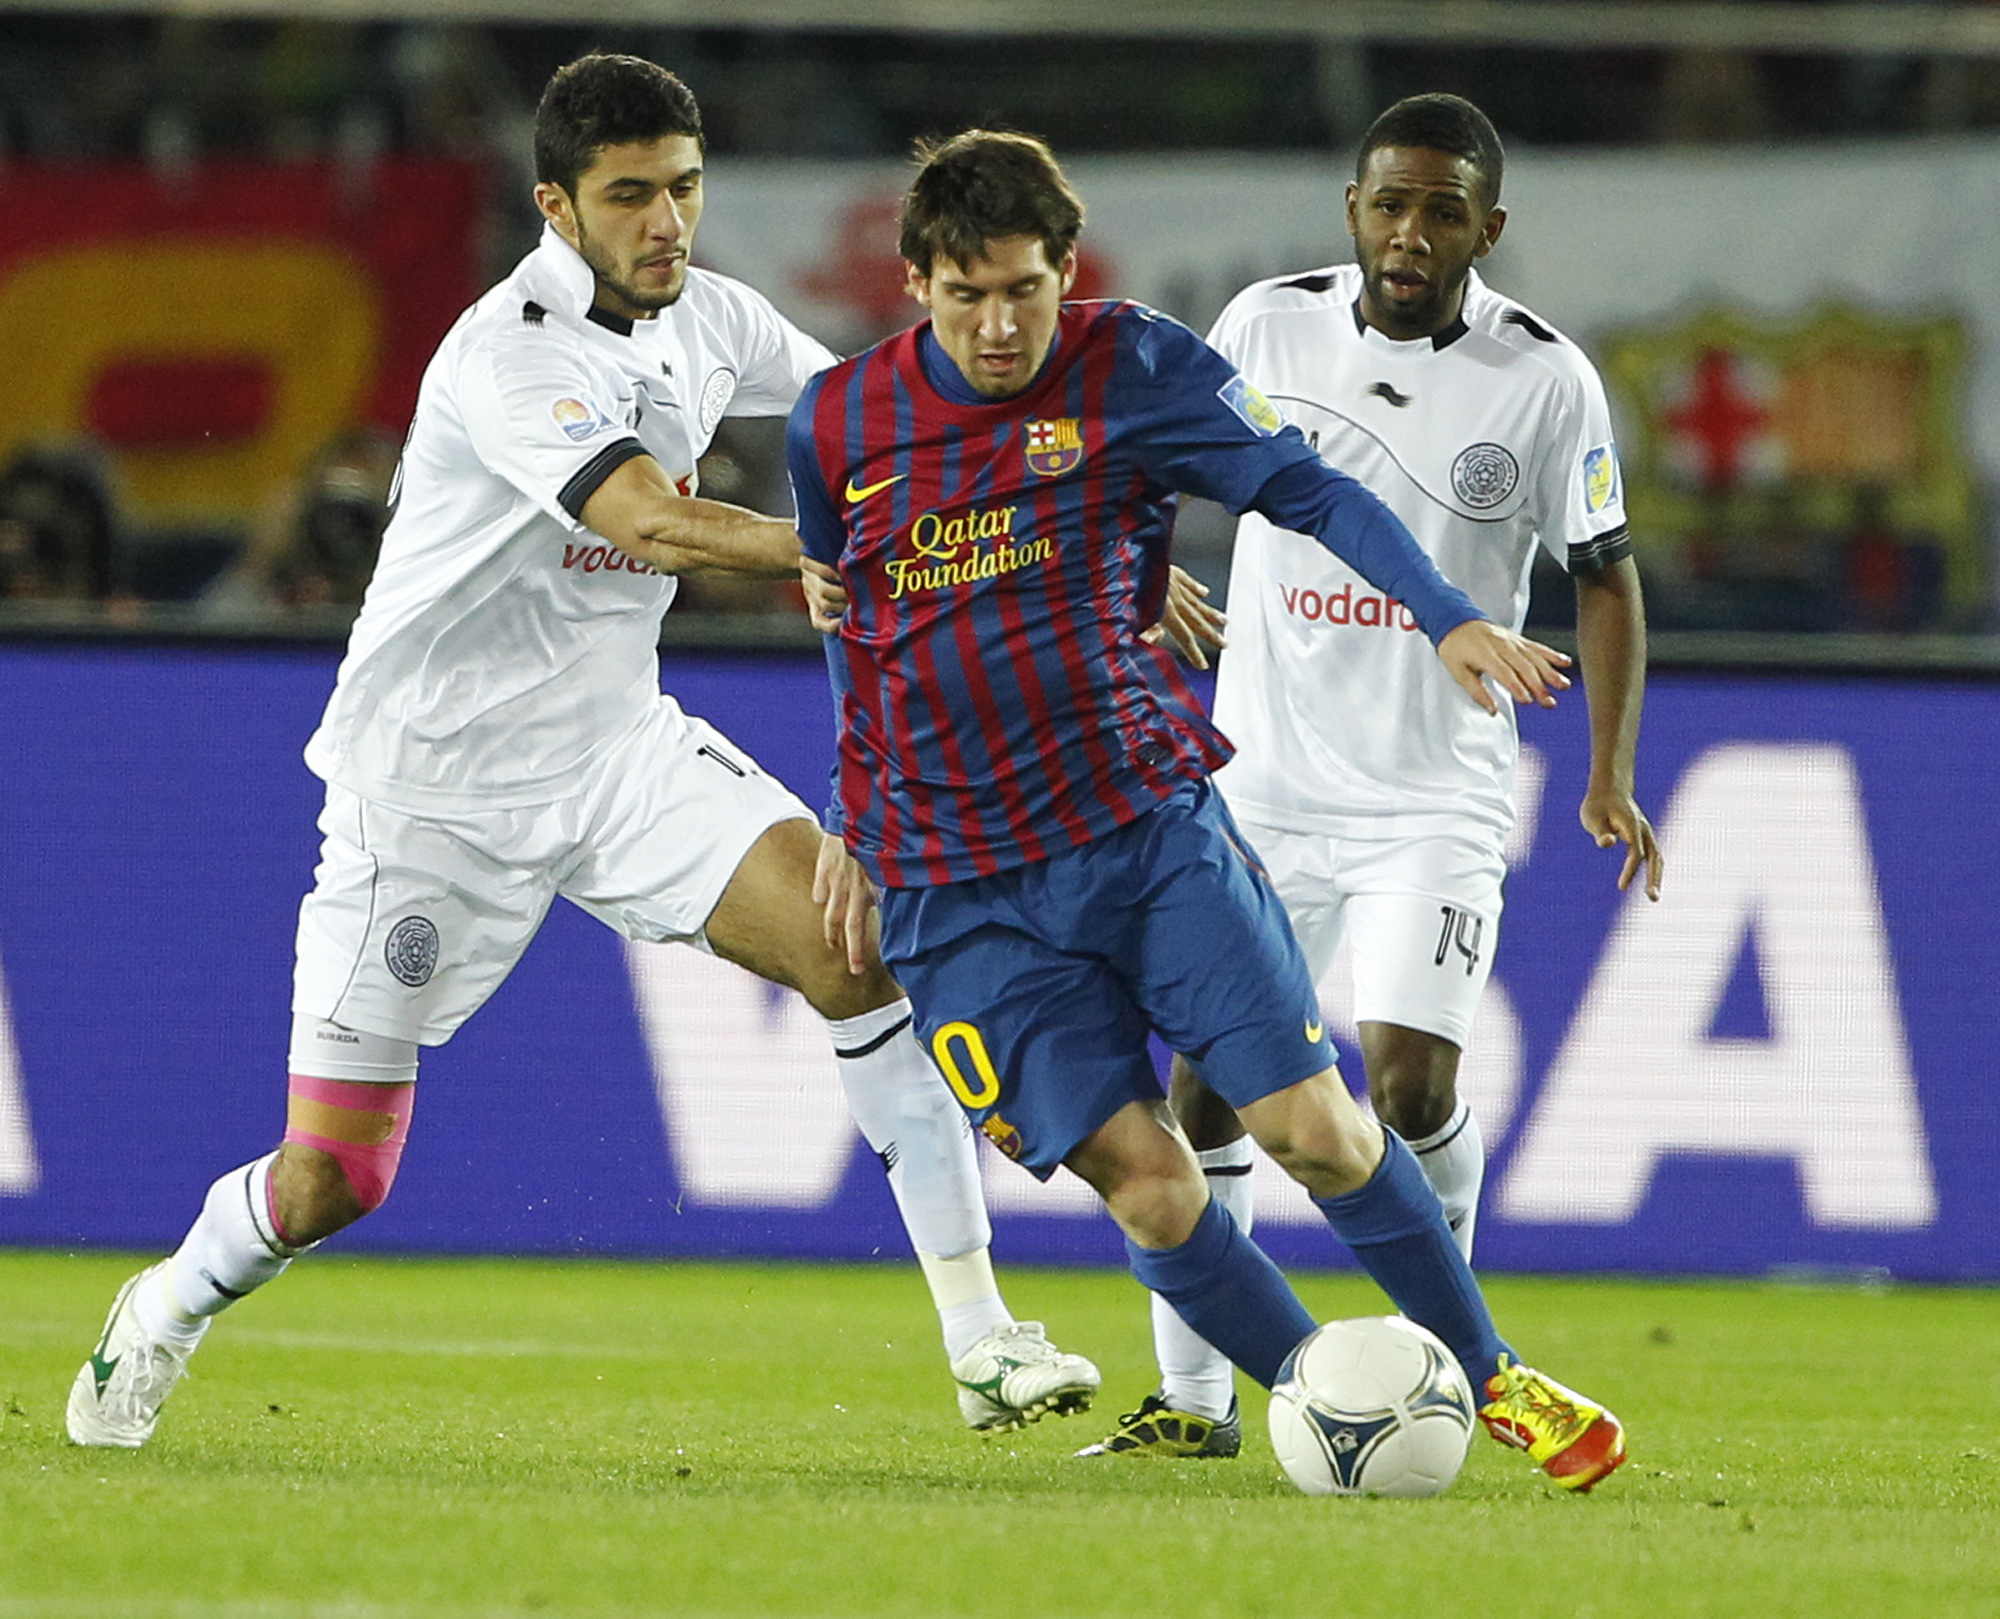 Barcelona med Lionel Messi i spetsen fick Bayer Leverkusen i slutspelets första omgång.